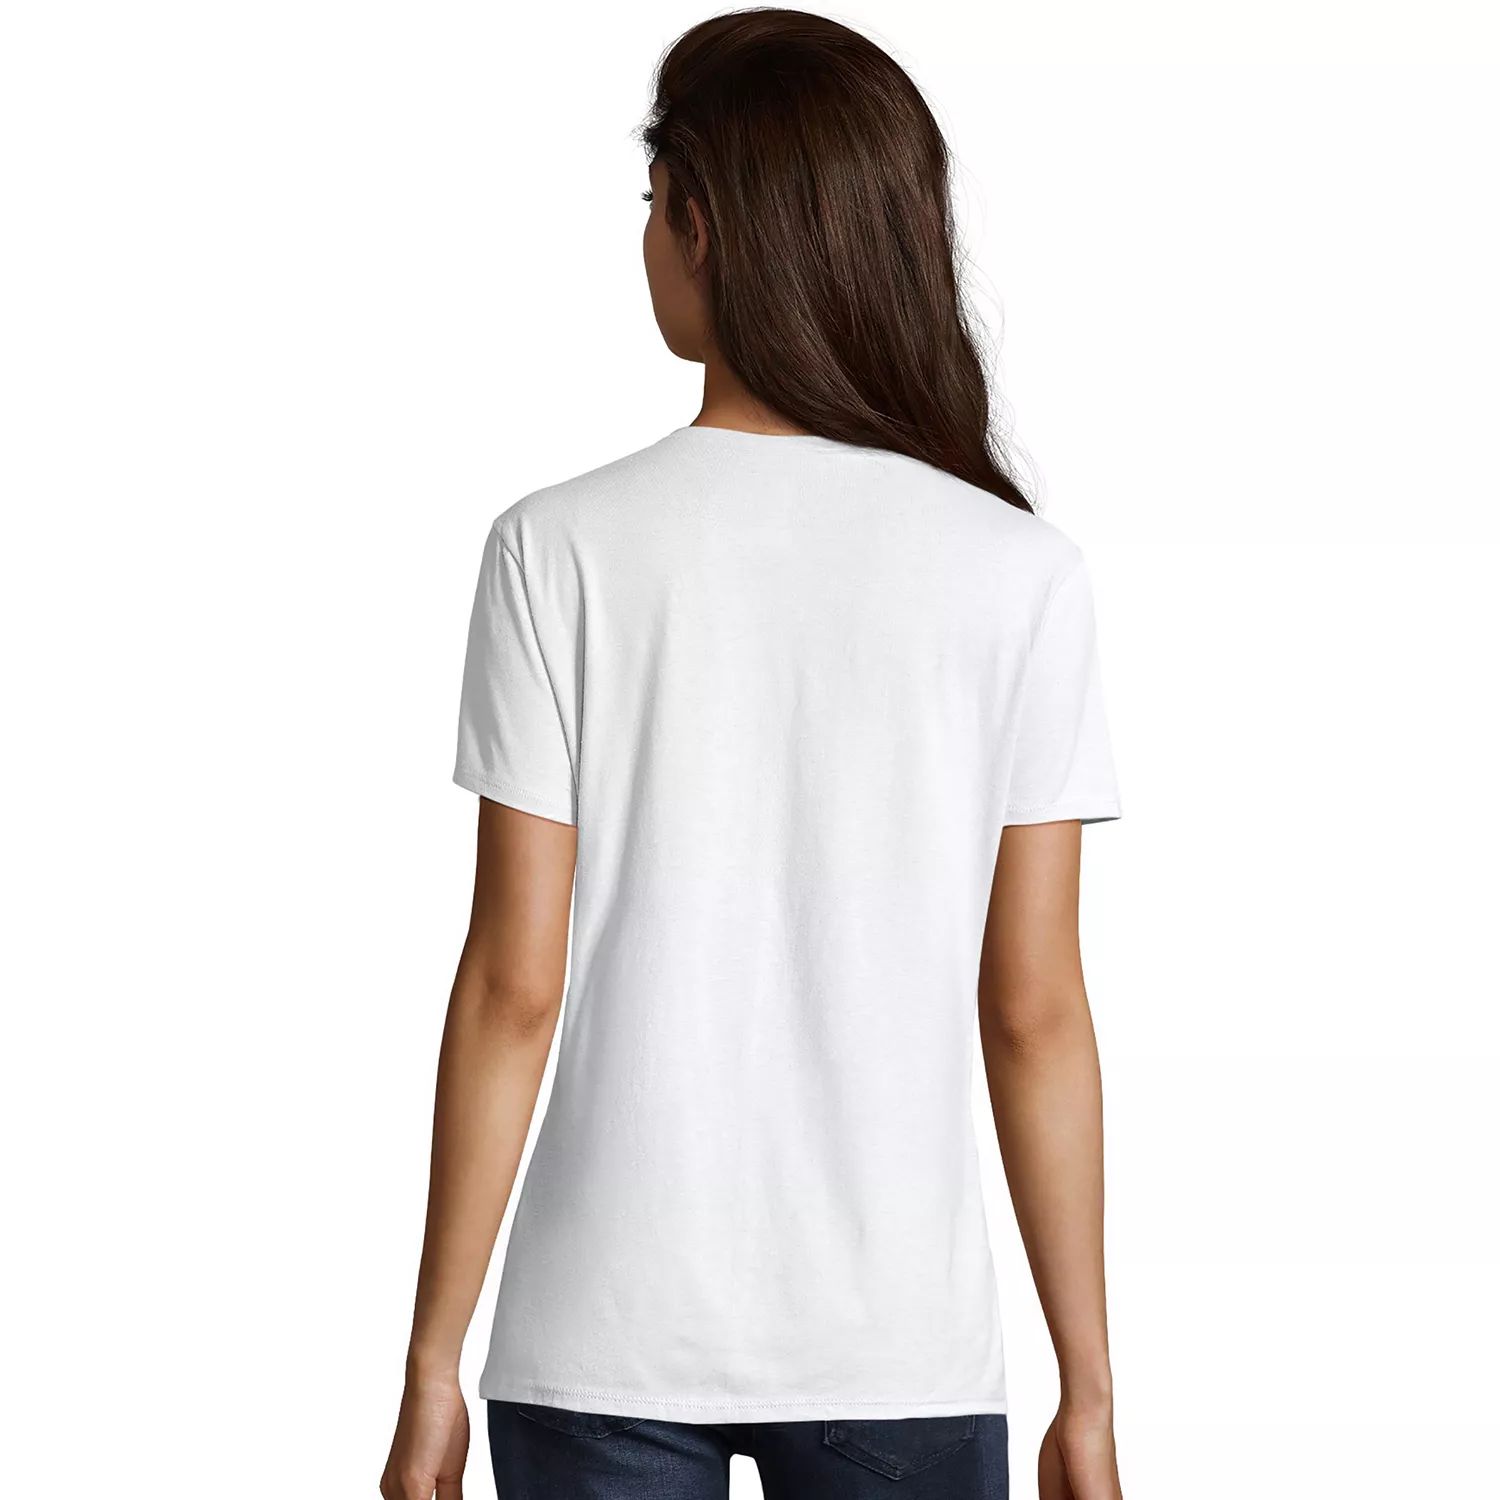 Женская футболка Hanes с короткими рукавами и V-образным вырезом с графическим рисунком Hanes cherries 500g